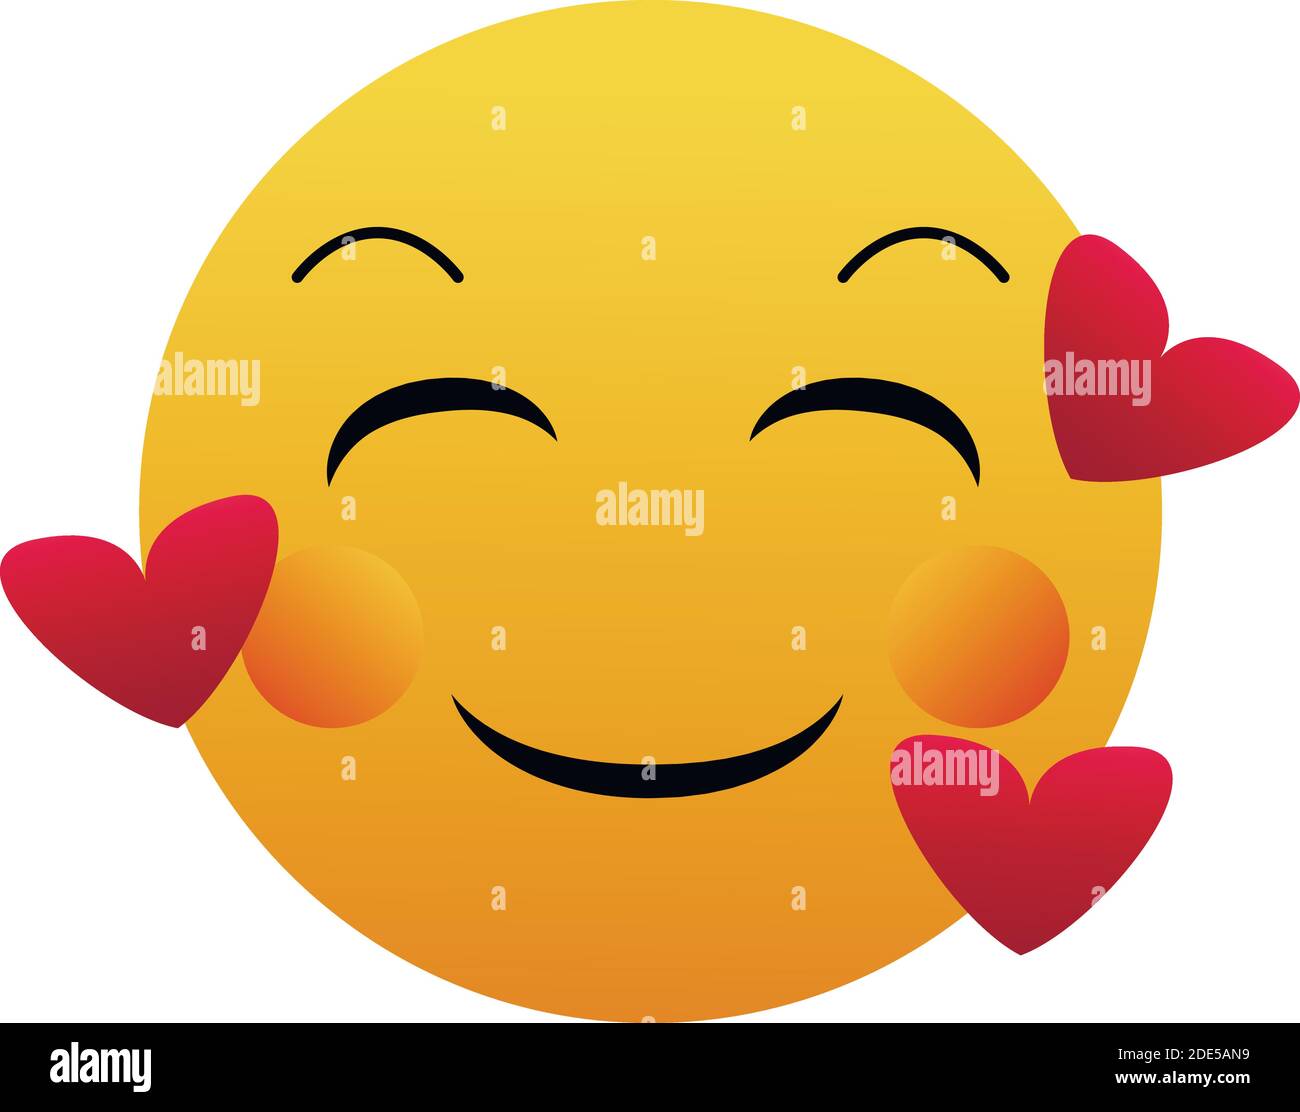 Emoji avec les coeurs - dans le visage d'amour - Emoticon visage avec les yeux souriants, les joues roses, et trois coeurs flottant autour de sa tête - exprime heureux, affectio Illustration de Vecteur